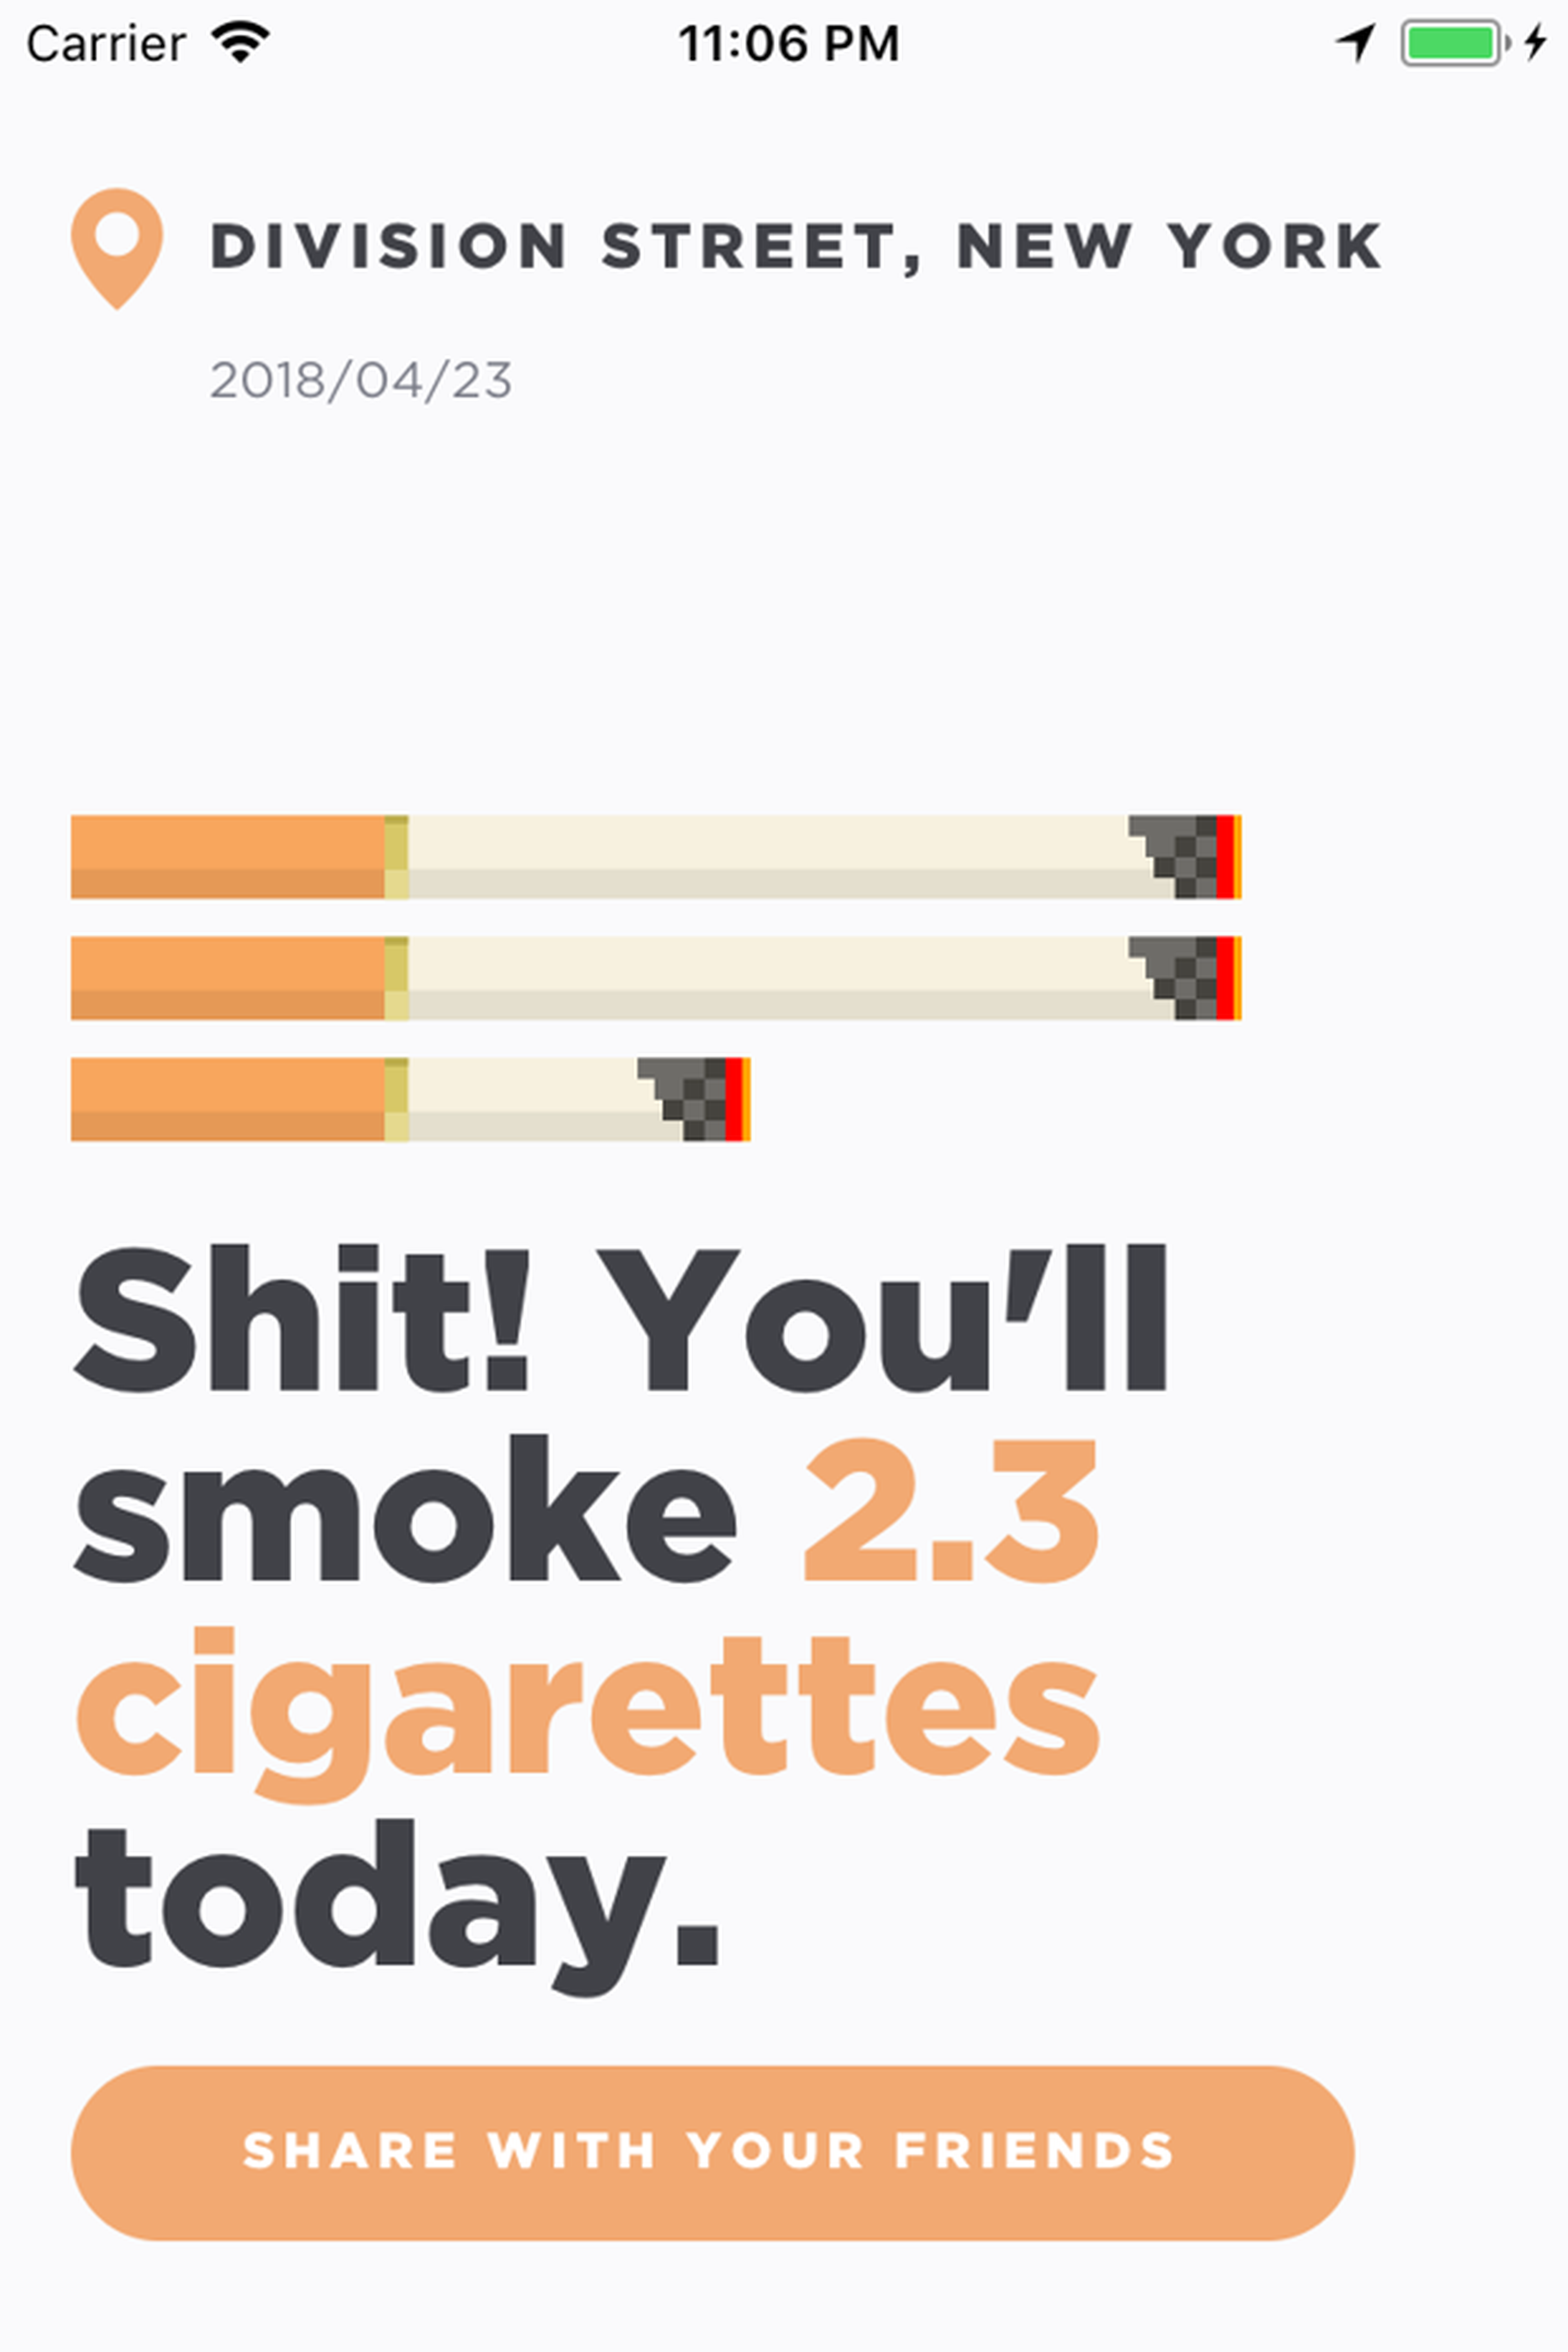 Shit i smoke